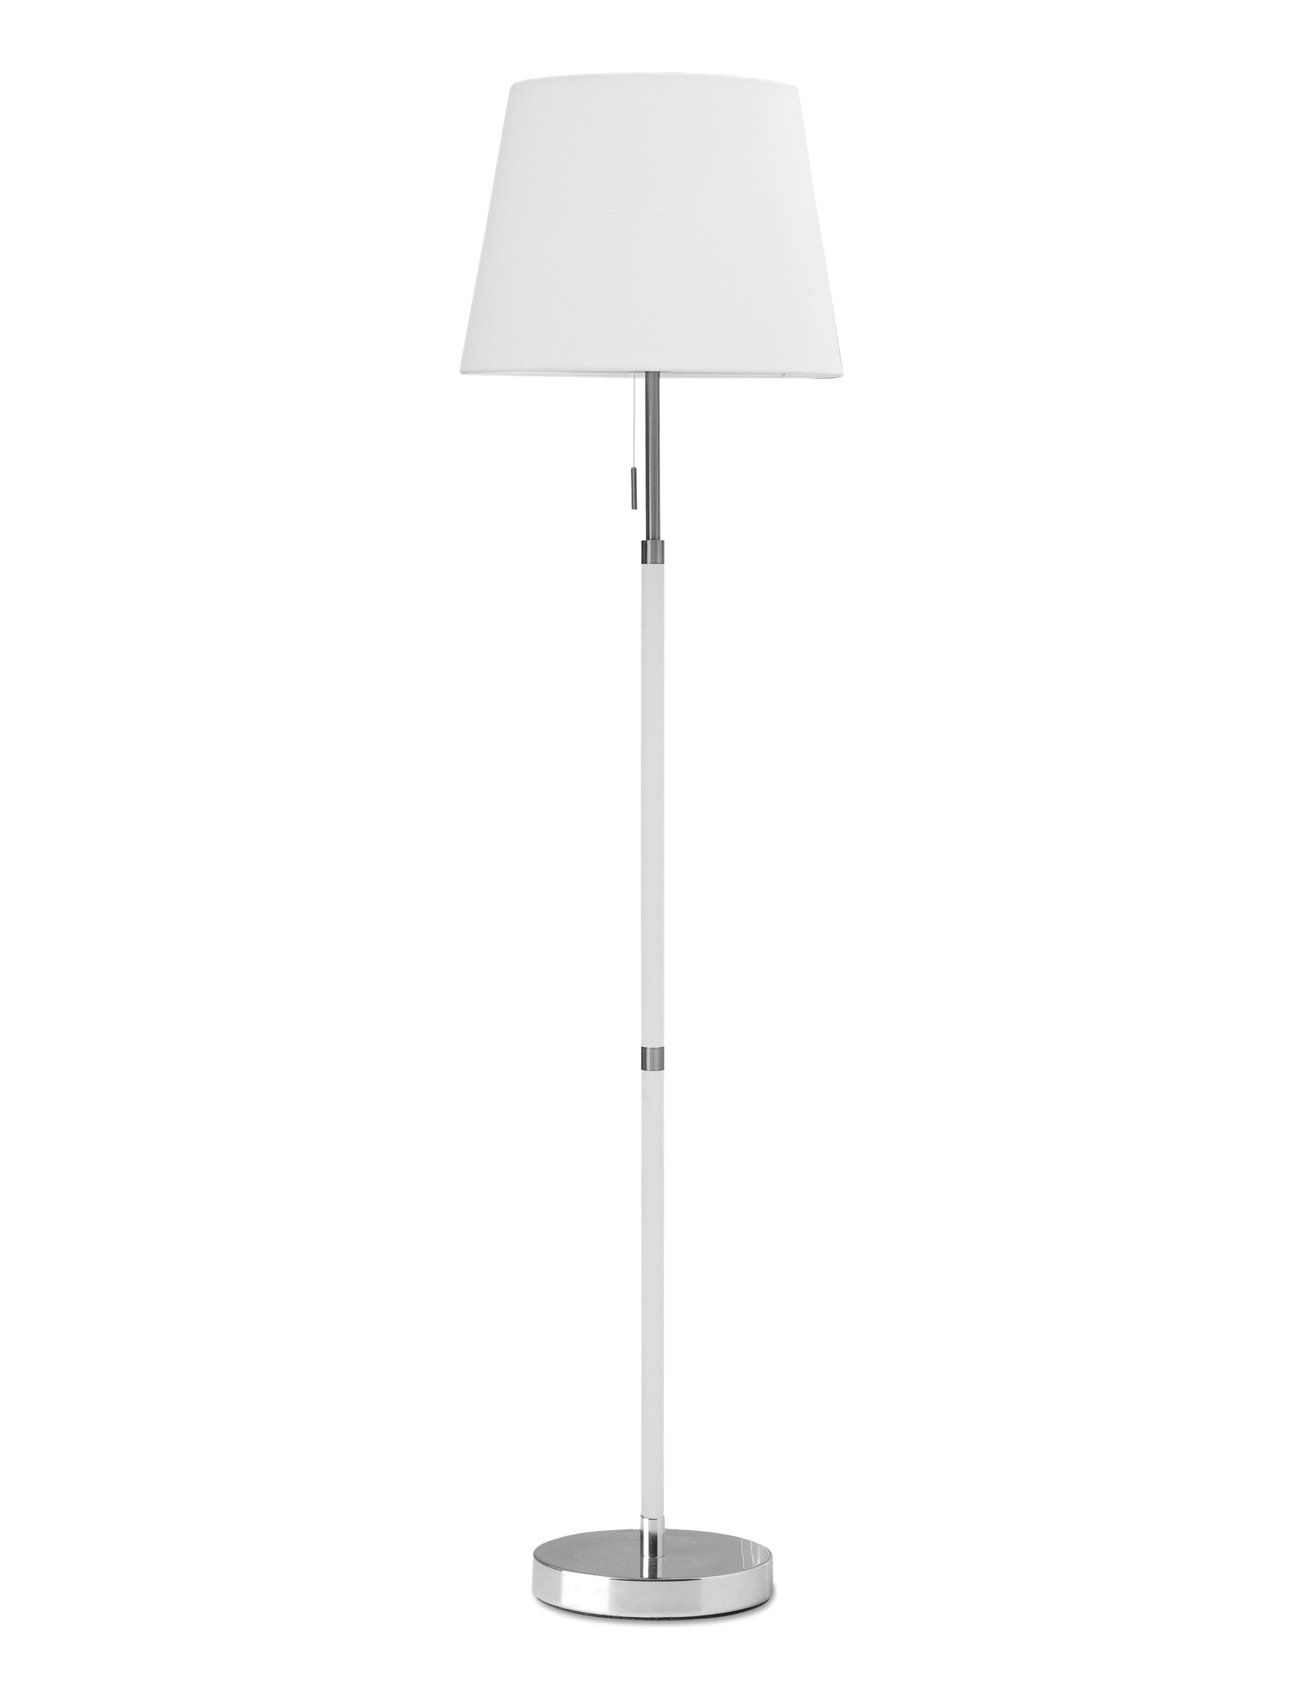 Venice Floor Chrome/White Home Lighting Lamps Floor Lamps White Frandsen Lighting